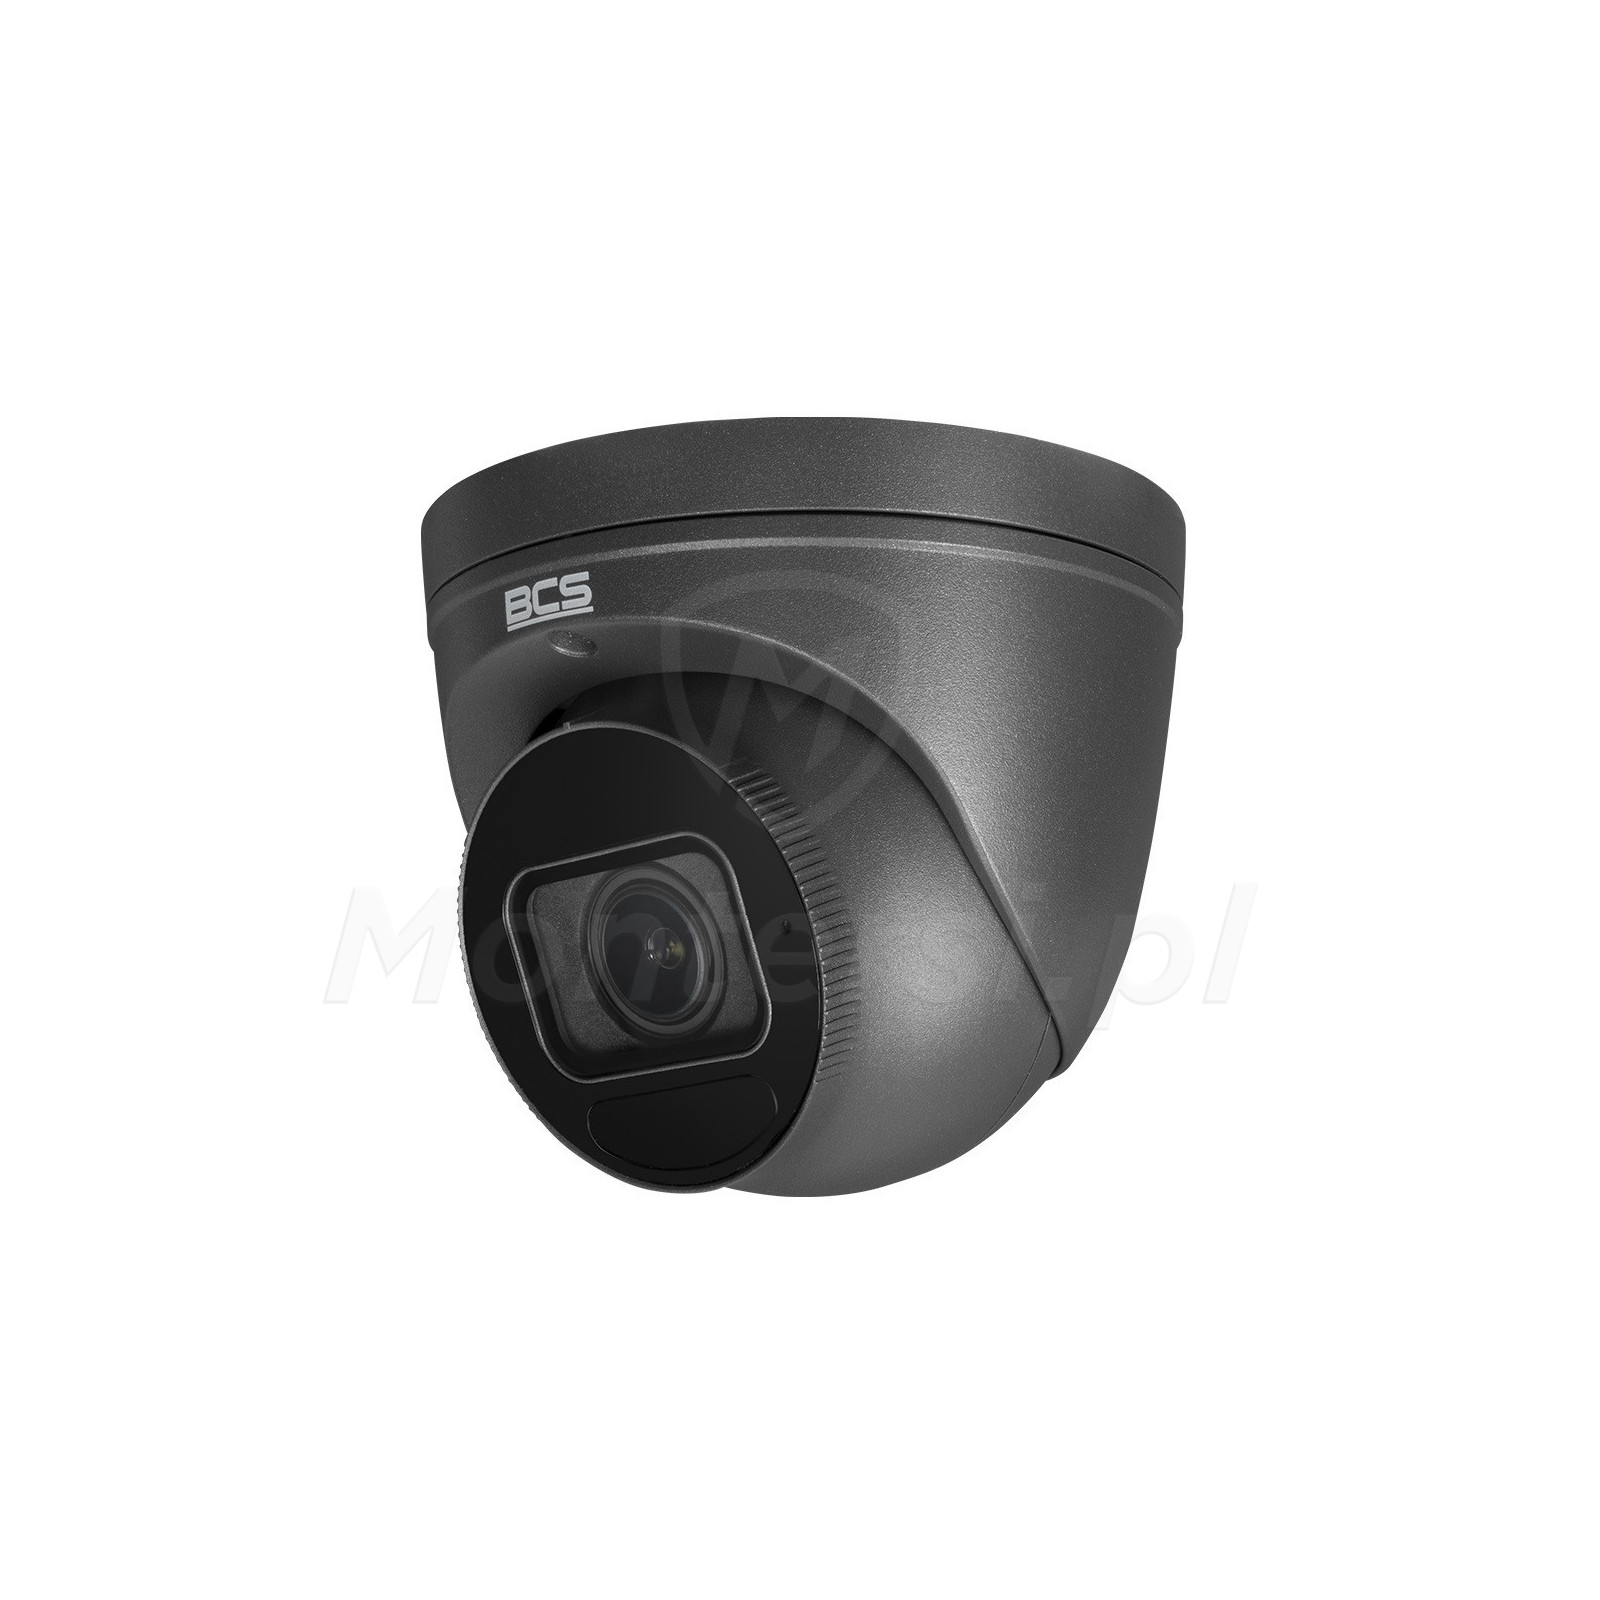 Wandaloodporna kamera IP BCS-P-EIP55VSR4-Ai2-G